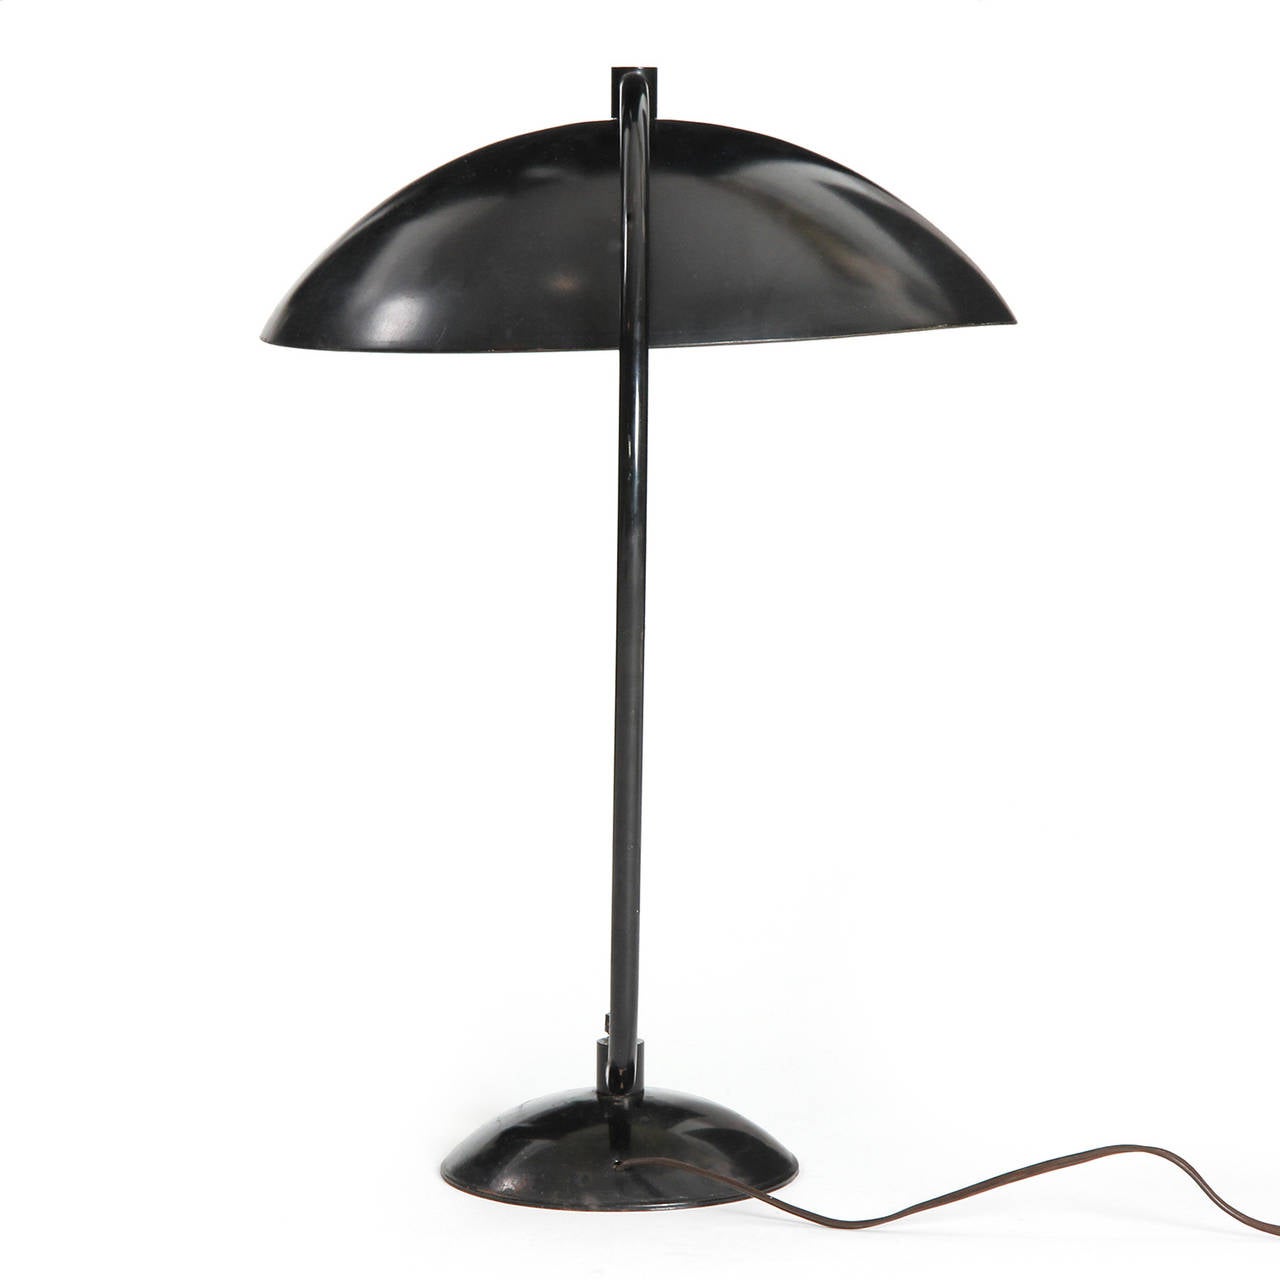 Mid-20th Century Desk Lamp by Kurt Versen